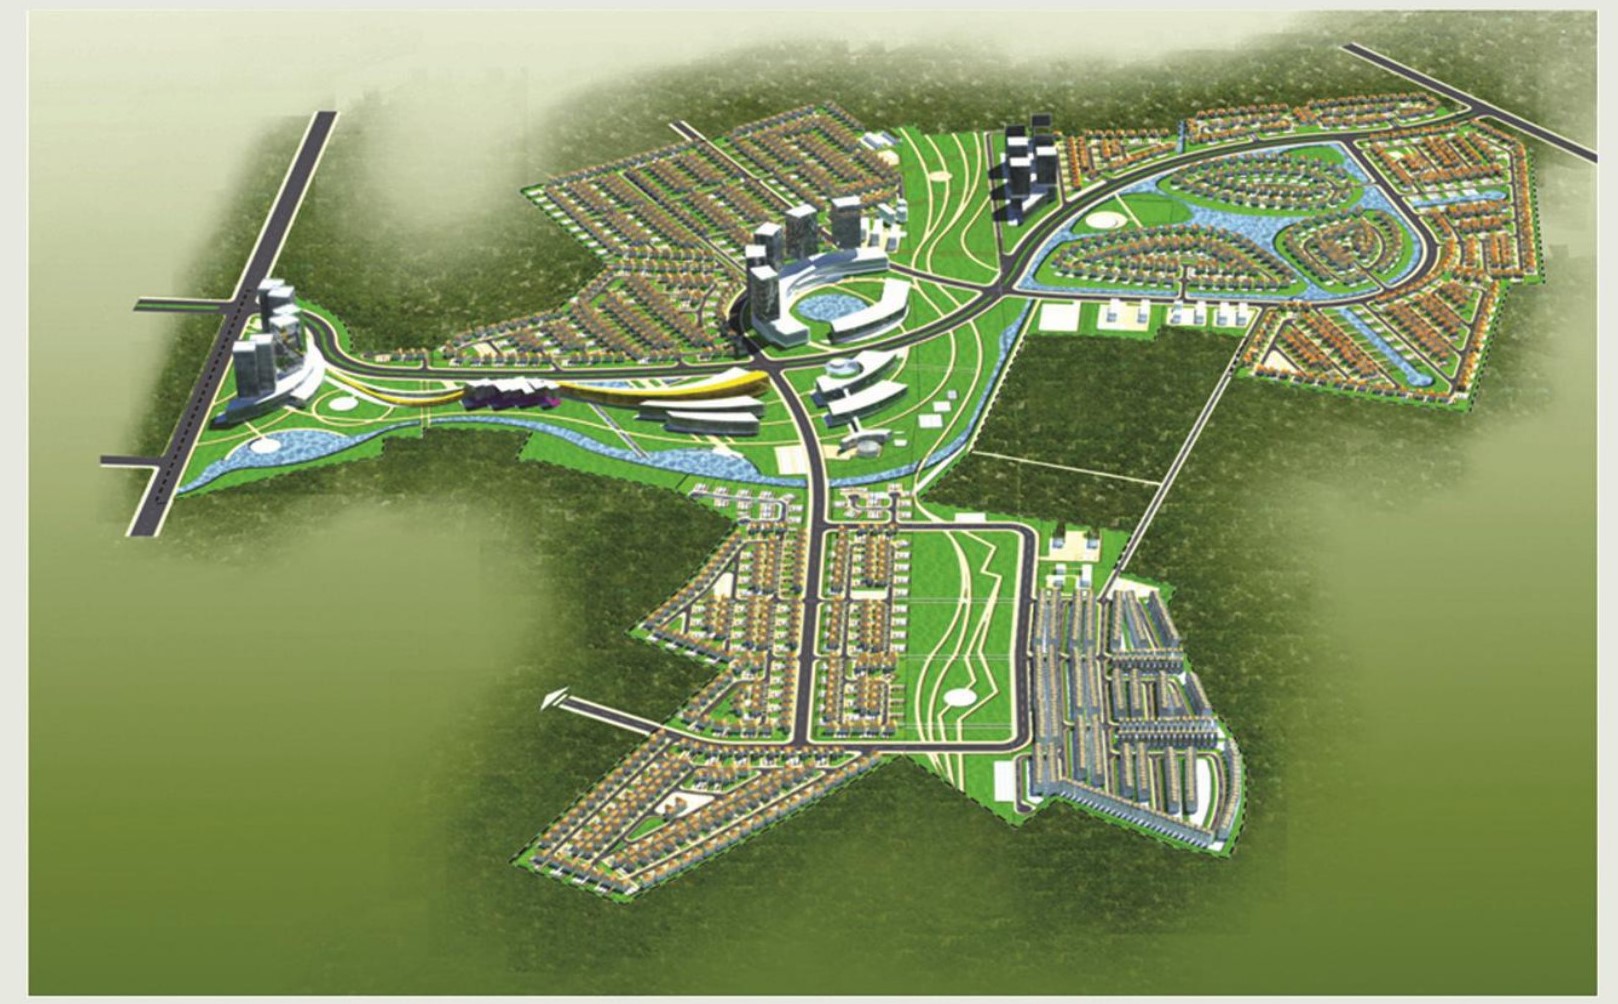 bản đồ phối cảnh tổng thể dự án 1/2000 khu đô thị sinh thái Hồng hạc - Xuân Lãm Bắc Ninh